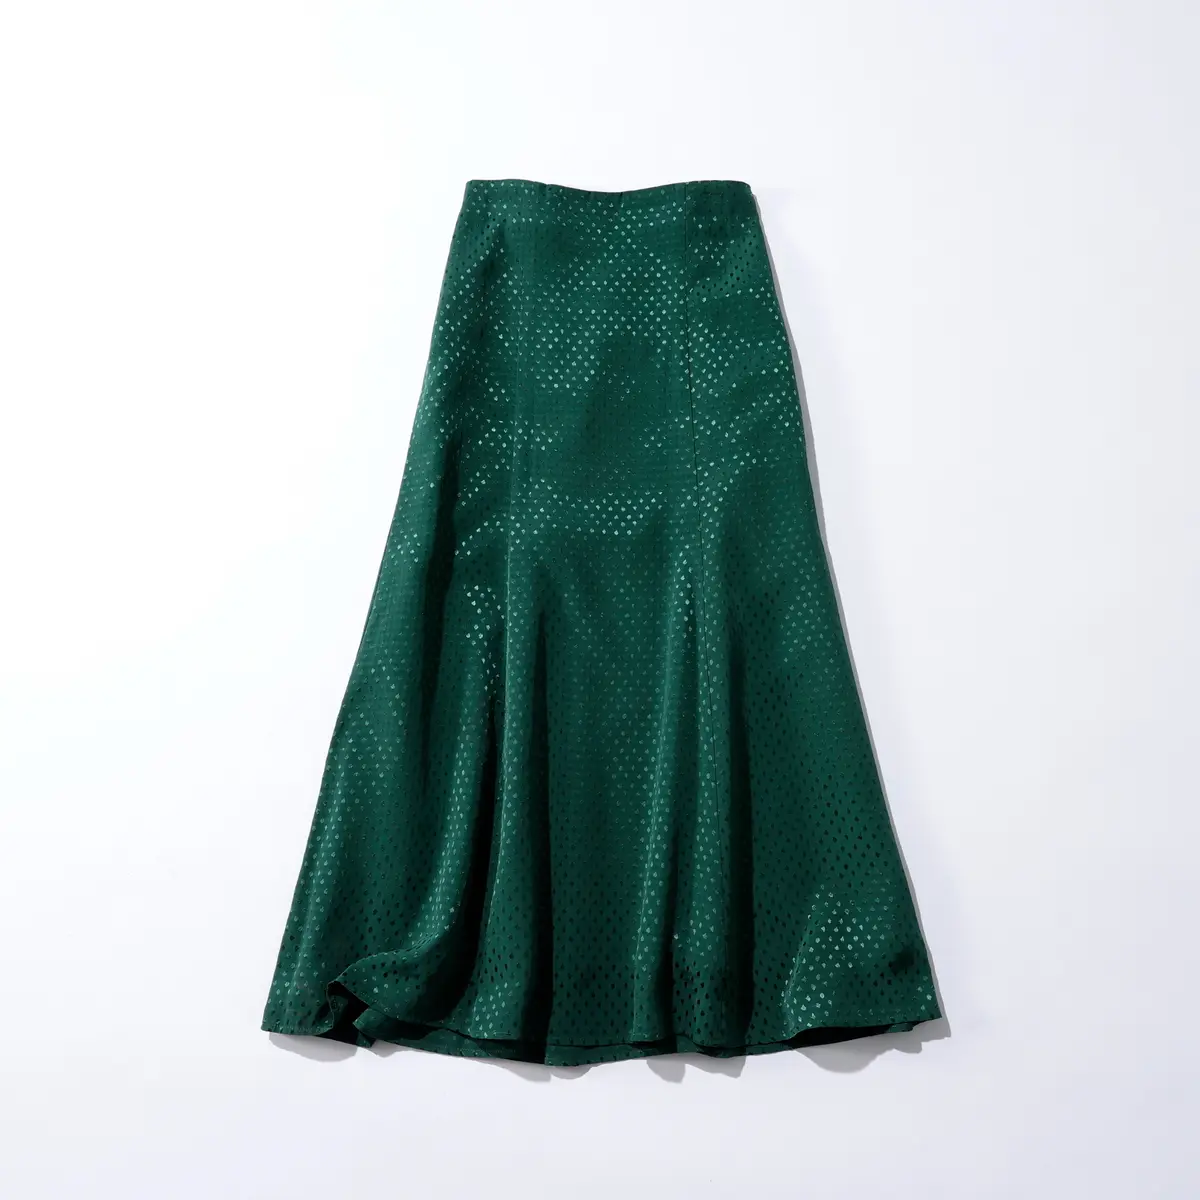 『ナノ・ユニバース』のグリーンドット柄スカート